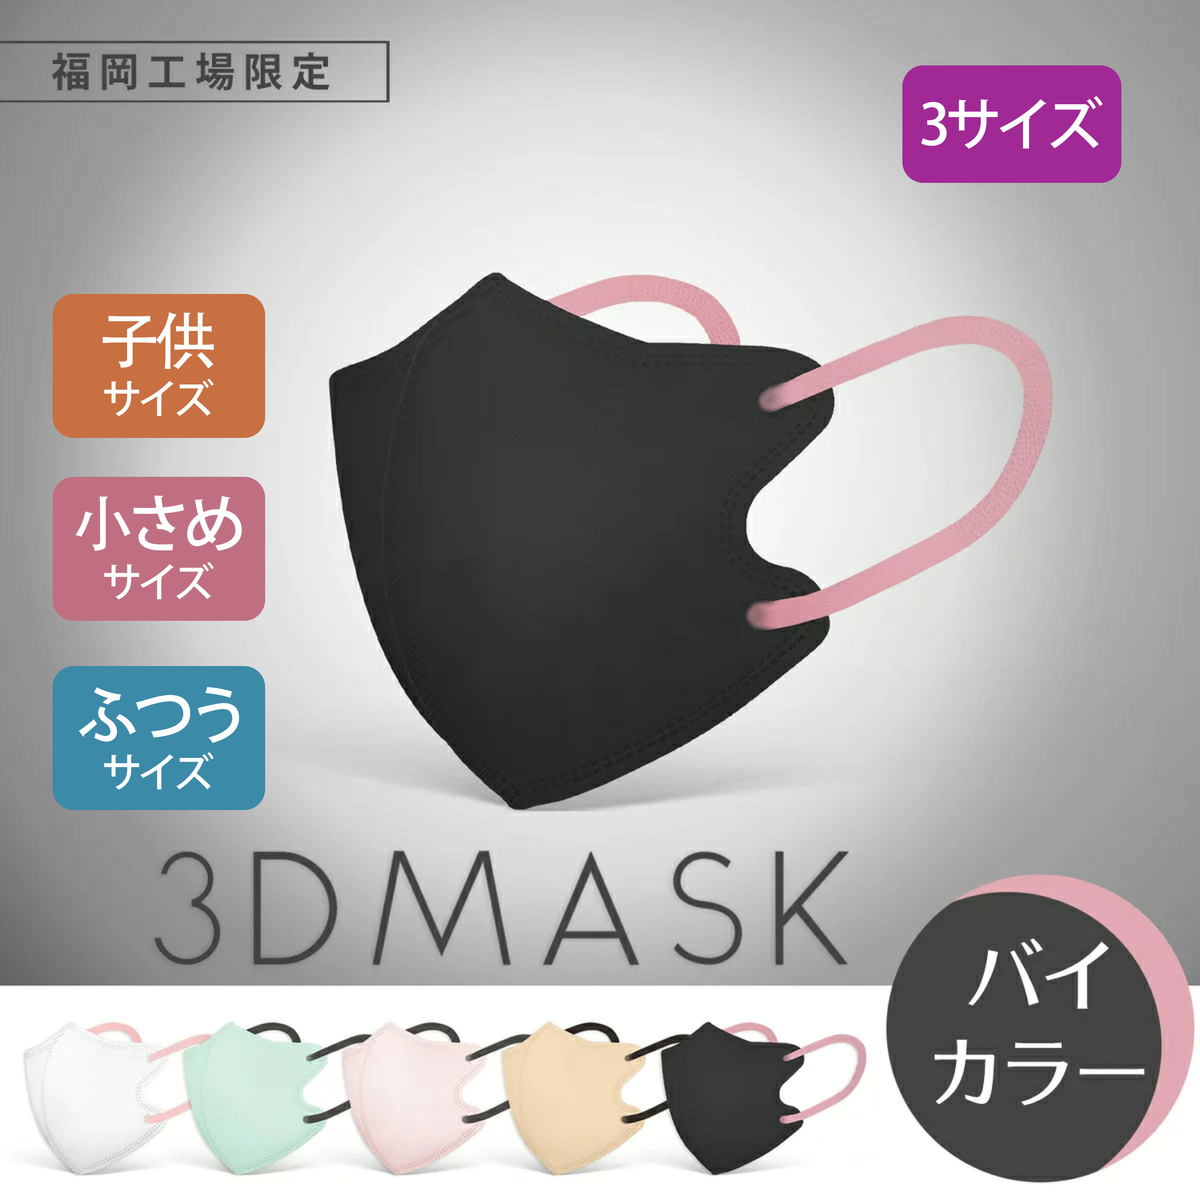 日本製 バイカラーマスク 不織布マスク 3Dマスク 30枚 バイカラー 血色マスク 普通サイズ 夏用 3層構造 立体マスク 小さめ 子供用 キッズ 大人用 花粉対策 小顔マスク カラーマスク  国産マスク 大きめ 子ども 小顔 JN95 KF94 N95